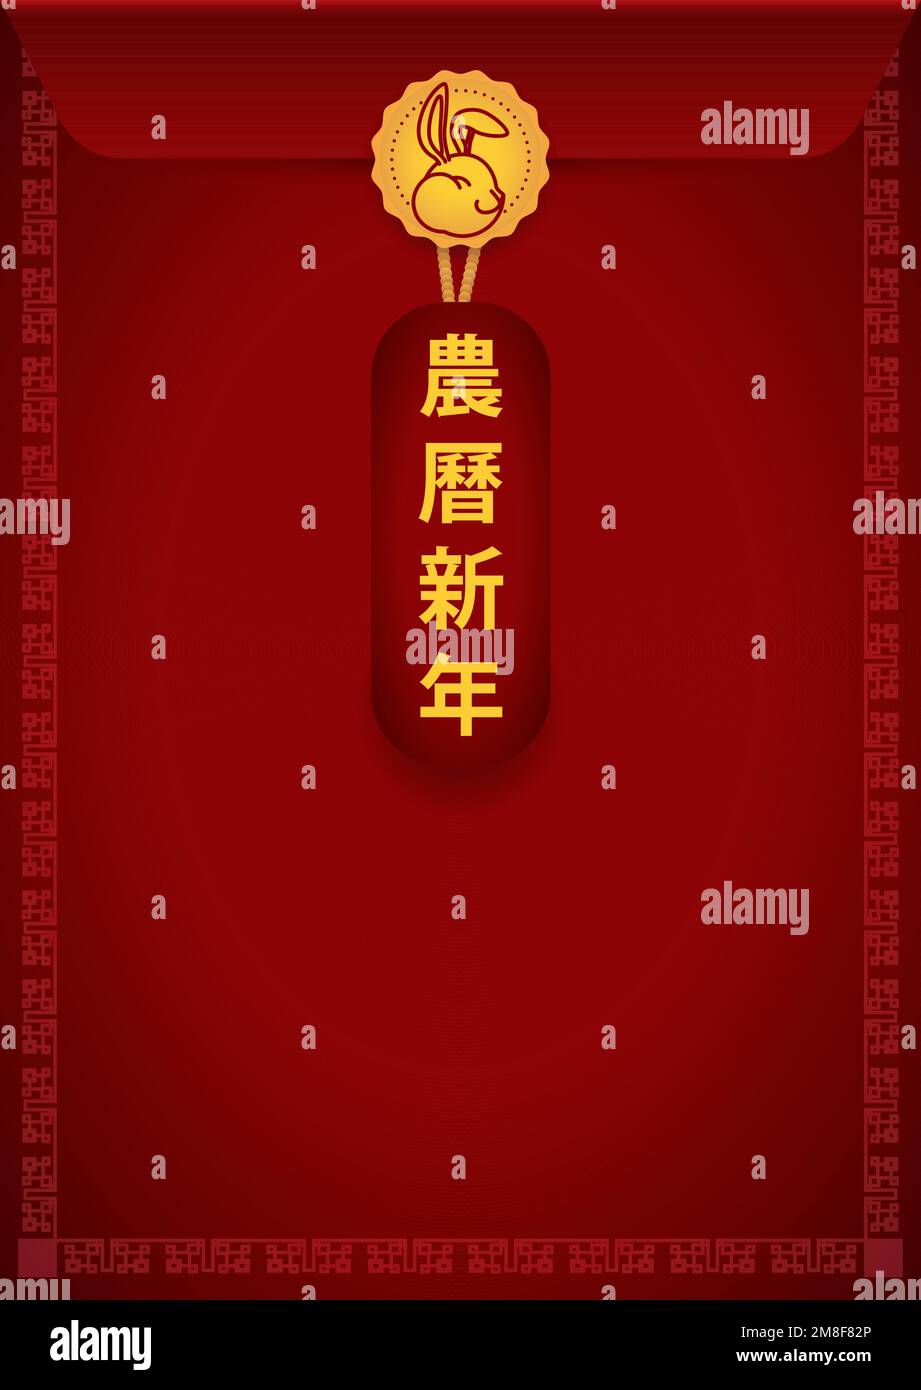 Enveloppe verticale rouge avec cadre oriental, ornée d'un timbre en caoutchouc et d'un lapin avec une étiquette avec un accueil pour un nouvel an chinois heureux. Illustration de Vecteur